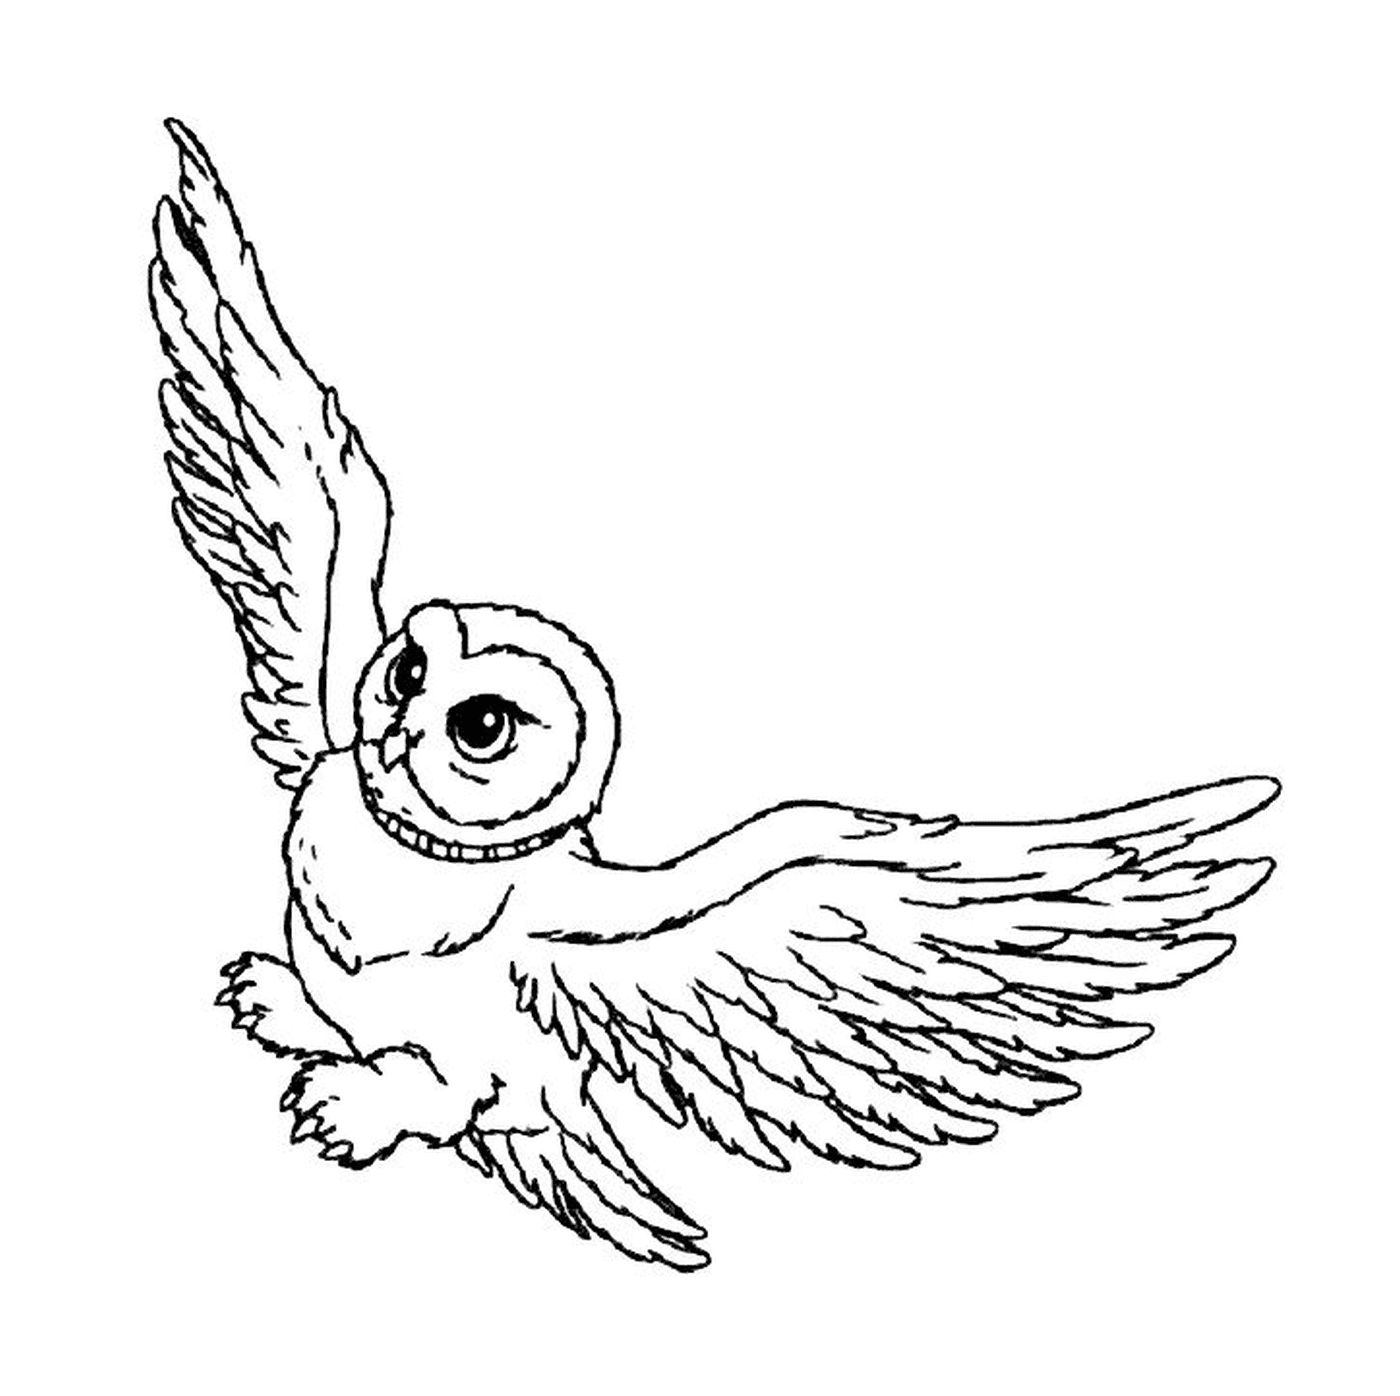  Hedwige vuela en el cielo 